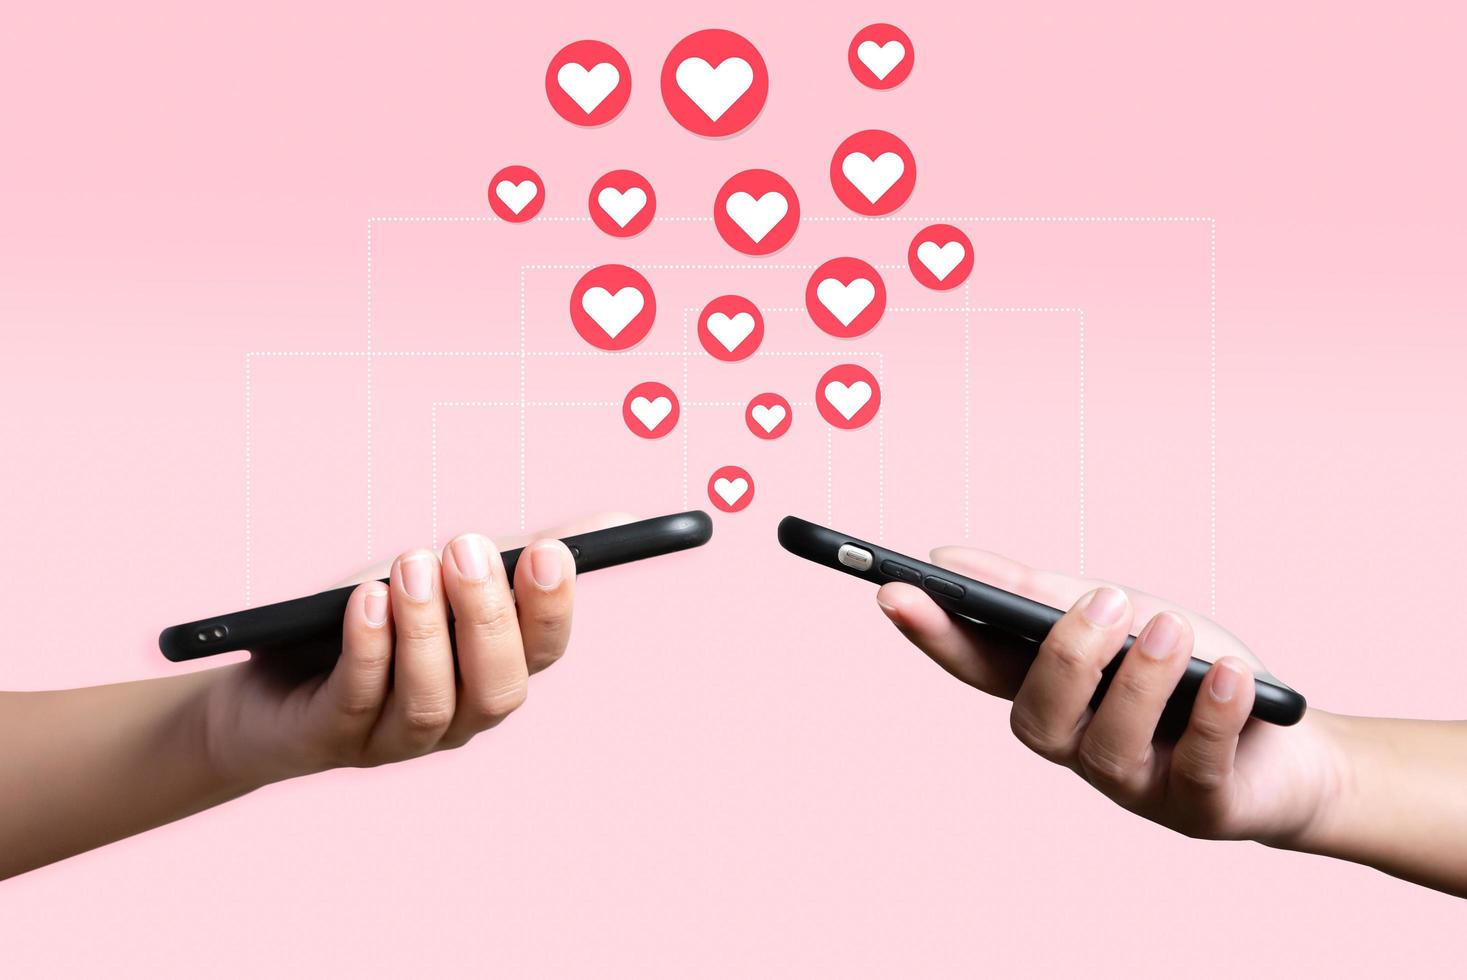 les gens utilisent un téléphone portable pour s'envoyer du cœur. concept d'amour et de connexion à l'aide d'une application téléphonique sur fond rose. photo